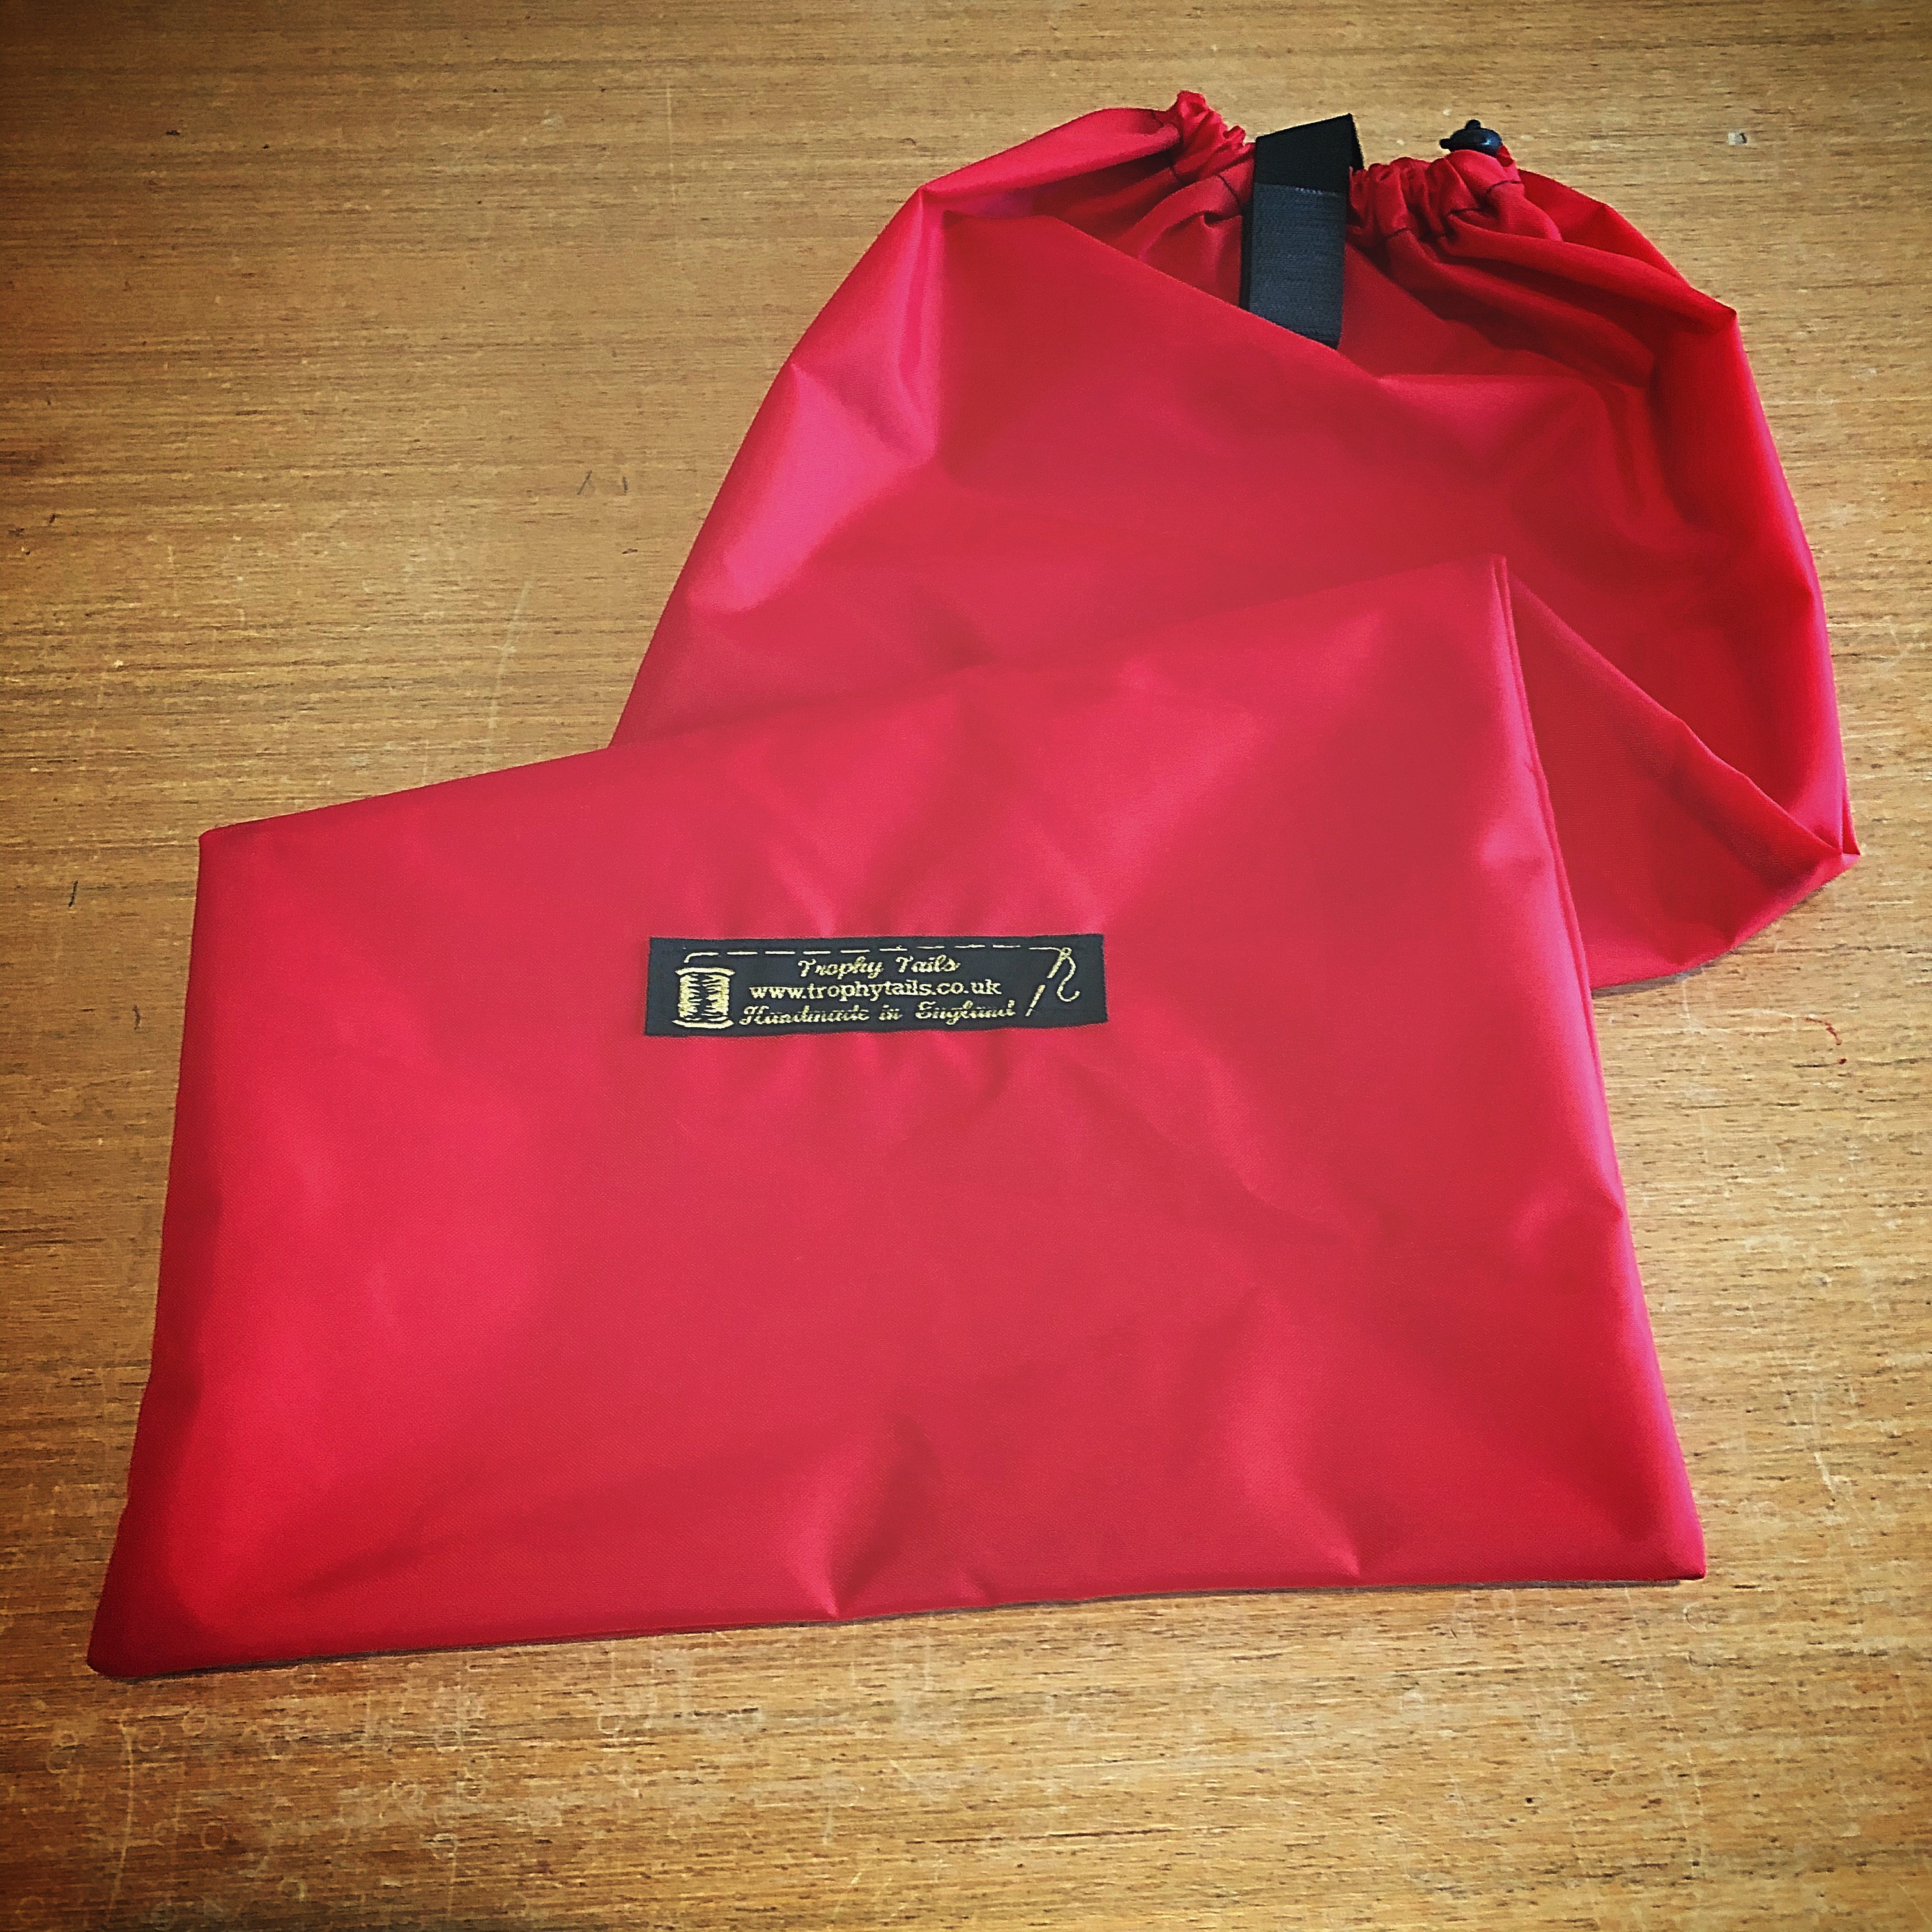 Heavy Duty Waterproof Tail Bag - Red